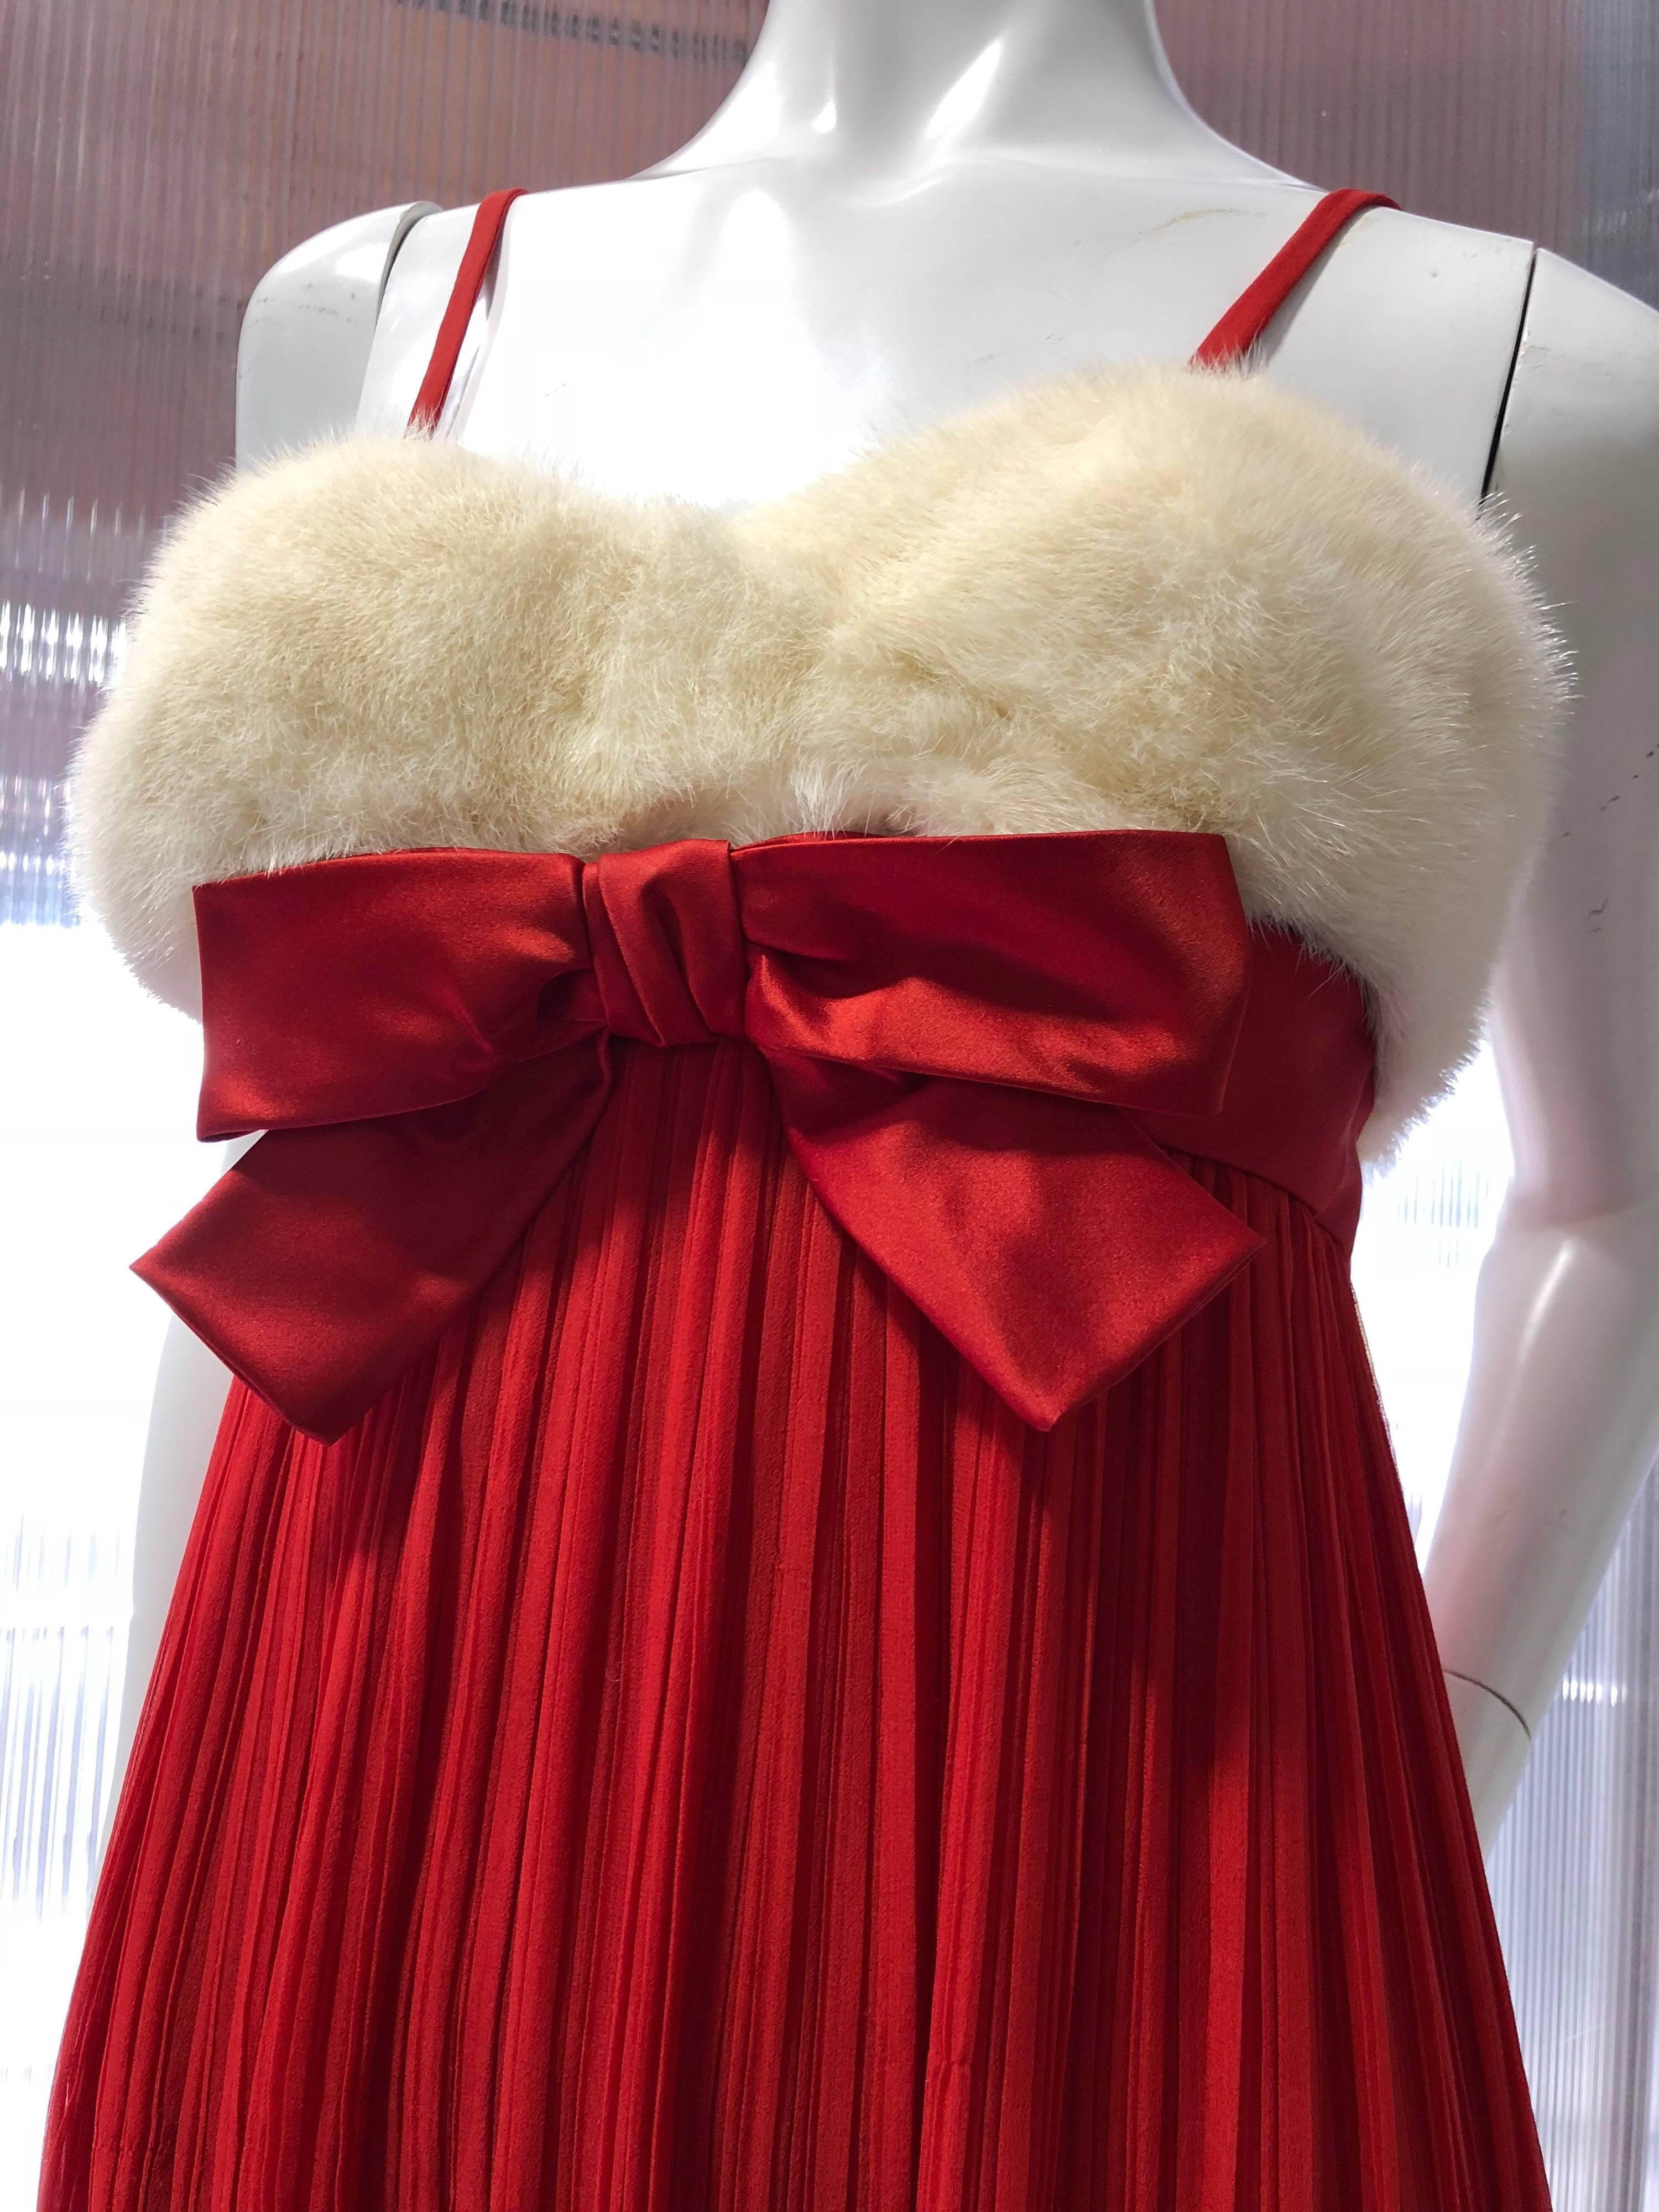 1964 Sarmi roter Seidenchiffon im Fortuny-Stil, plissiertes Abendkleid mit Empire-Taille, konstruiertem und entbeintem Mieder, verziert mit einer roten Satinschleife und weißem Nerzfell. Rückseite mit Reißverschluss und Haken.  Vollständig